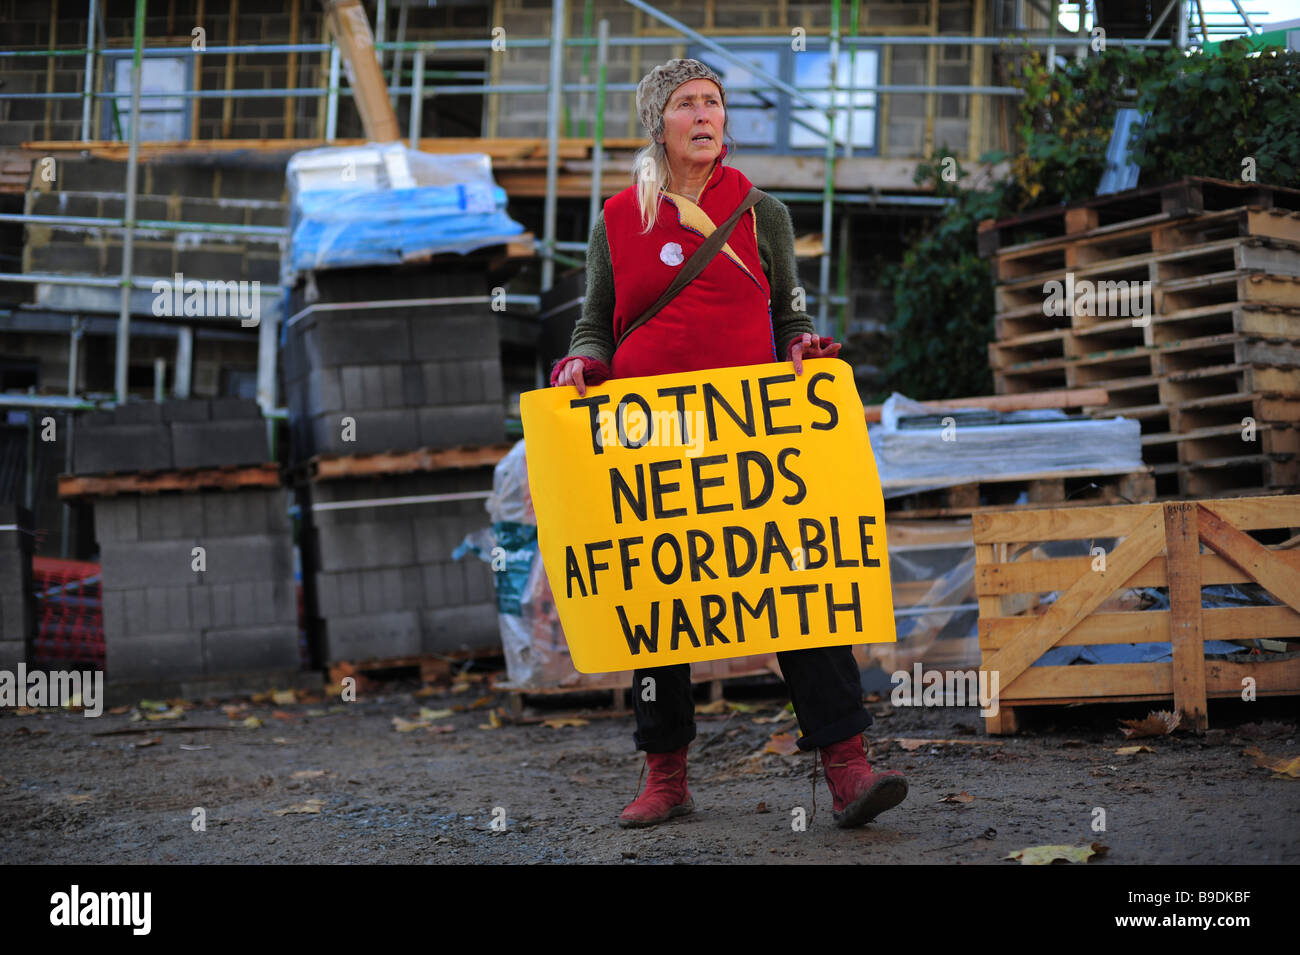 Une femme hippie campagne en Totnes, Devon, chaleur abordable pour, à l'extérieur de l'emplacement de l'édifice. Banque D'Images